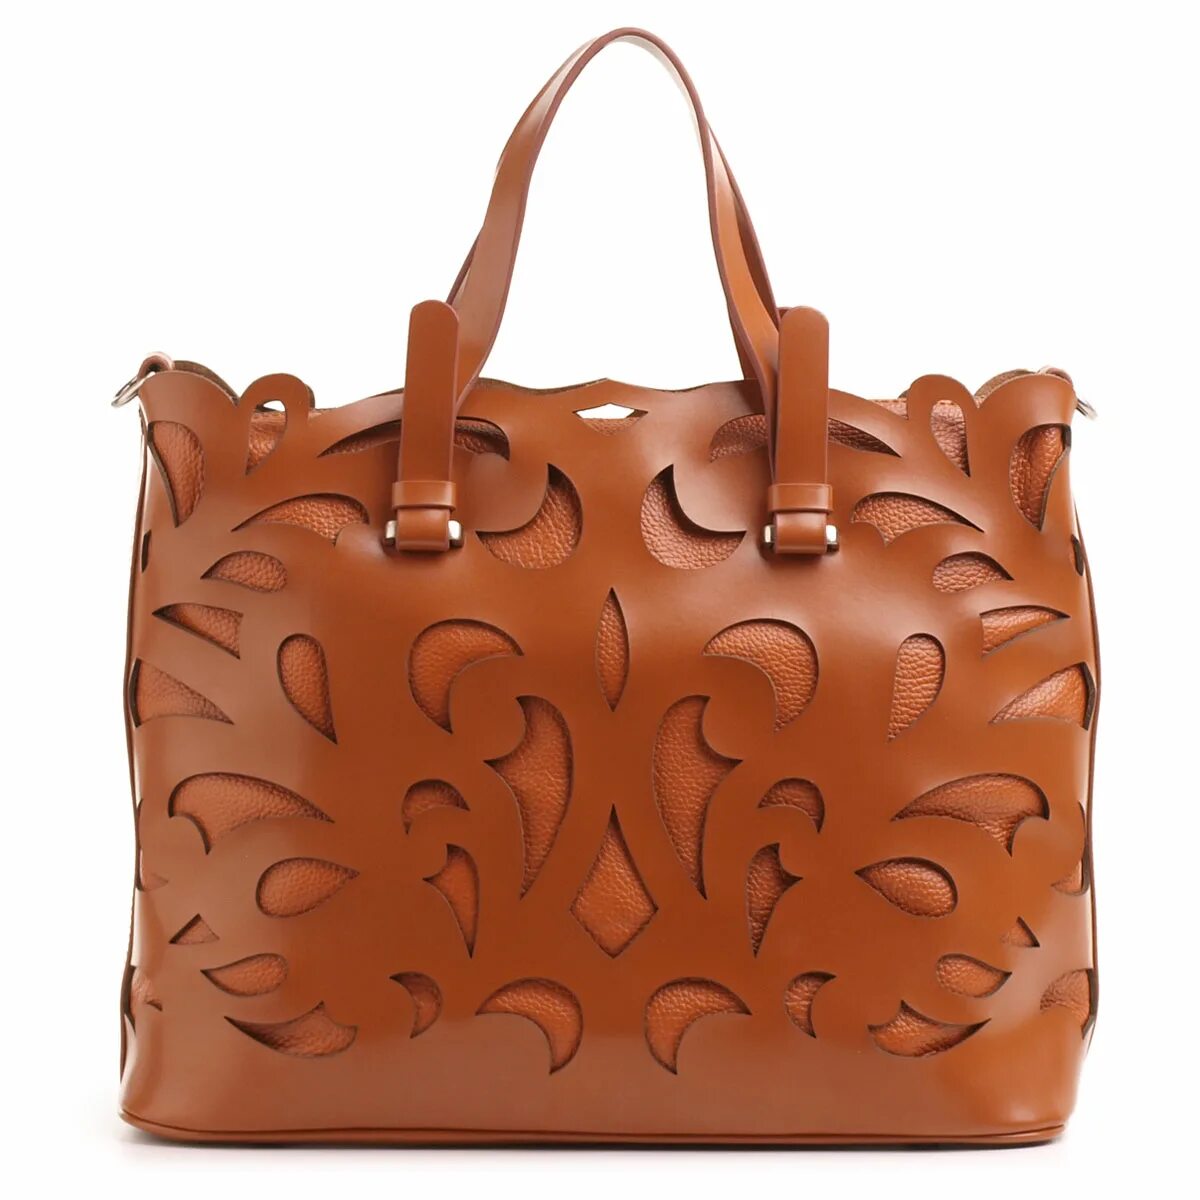 DFS Leather Fashion сумки. Женская кожаная сумка. Женская сумка из кожи. Итальянские сумочки из натуральной кожи. Сумки кожа недорого интернет